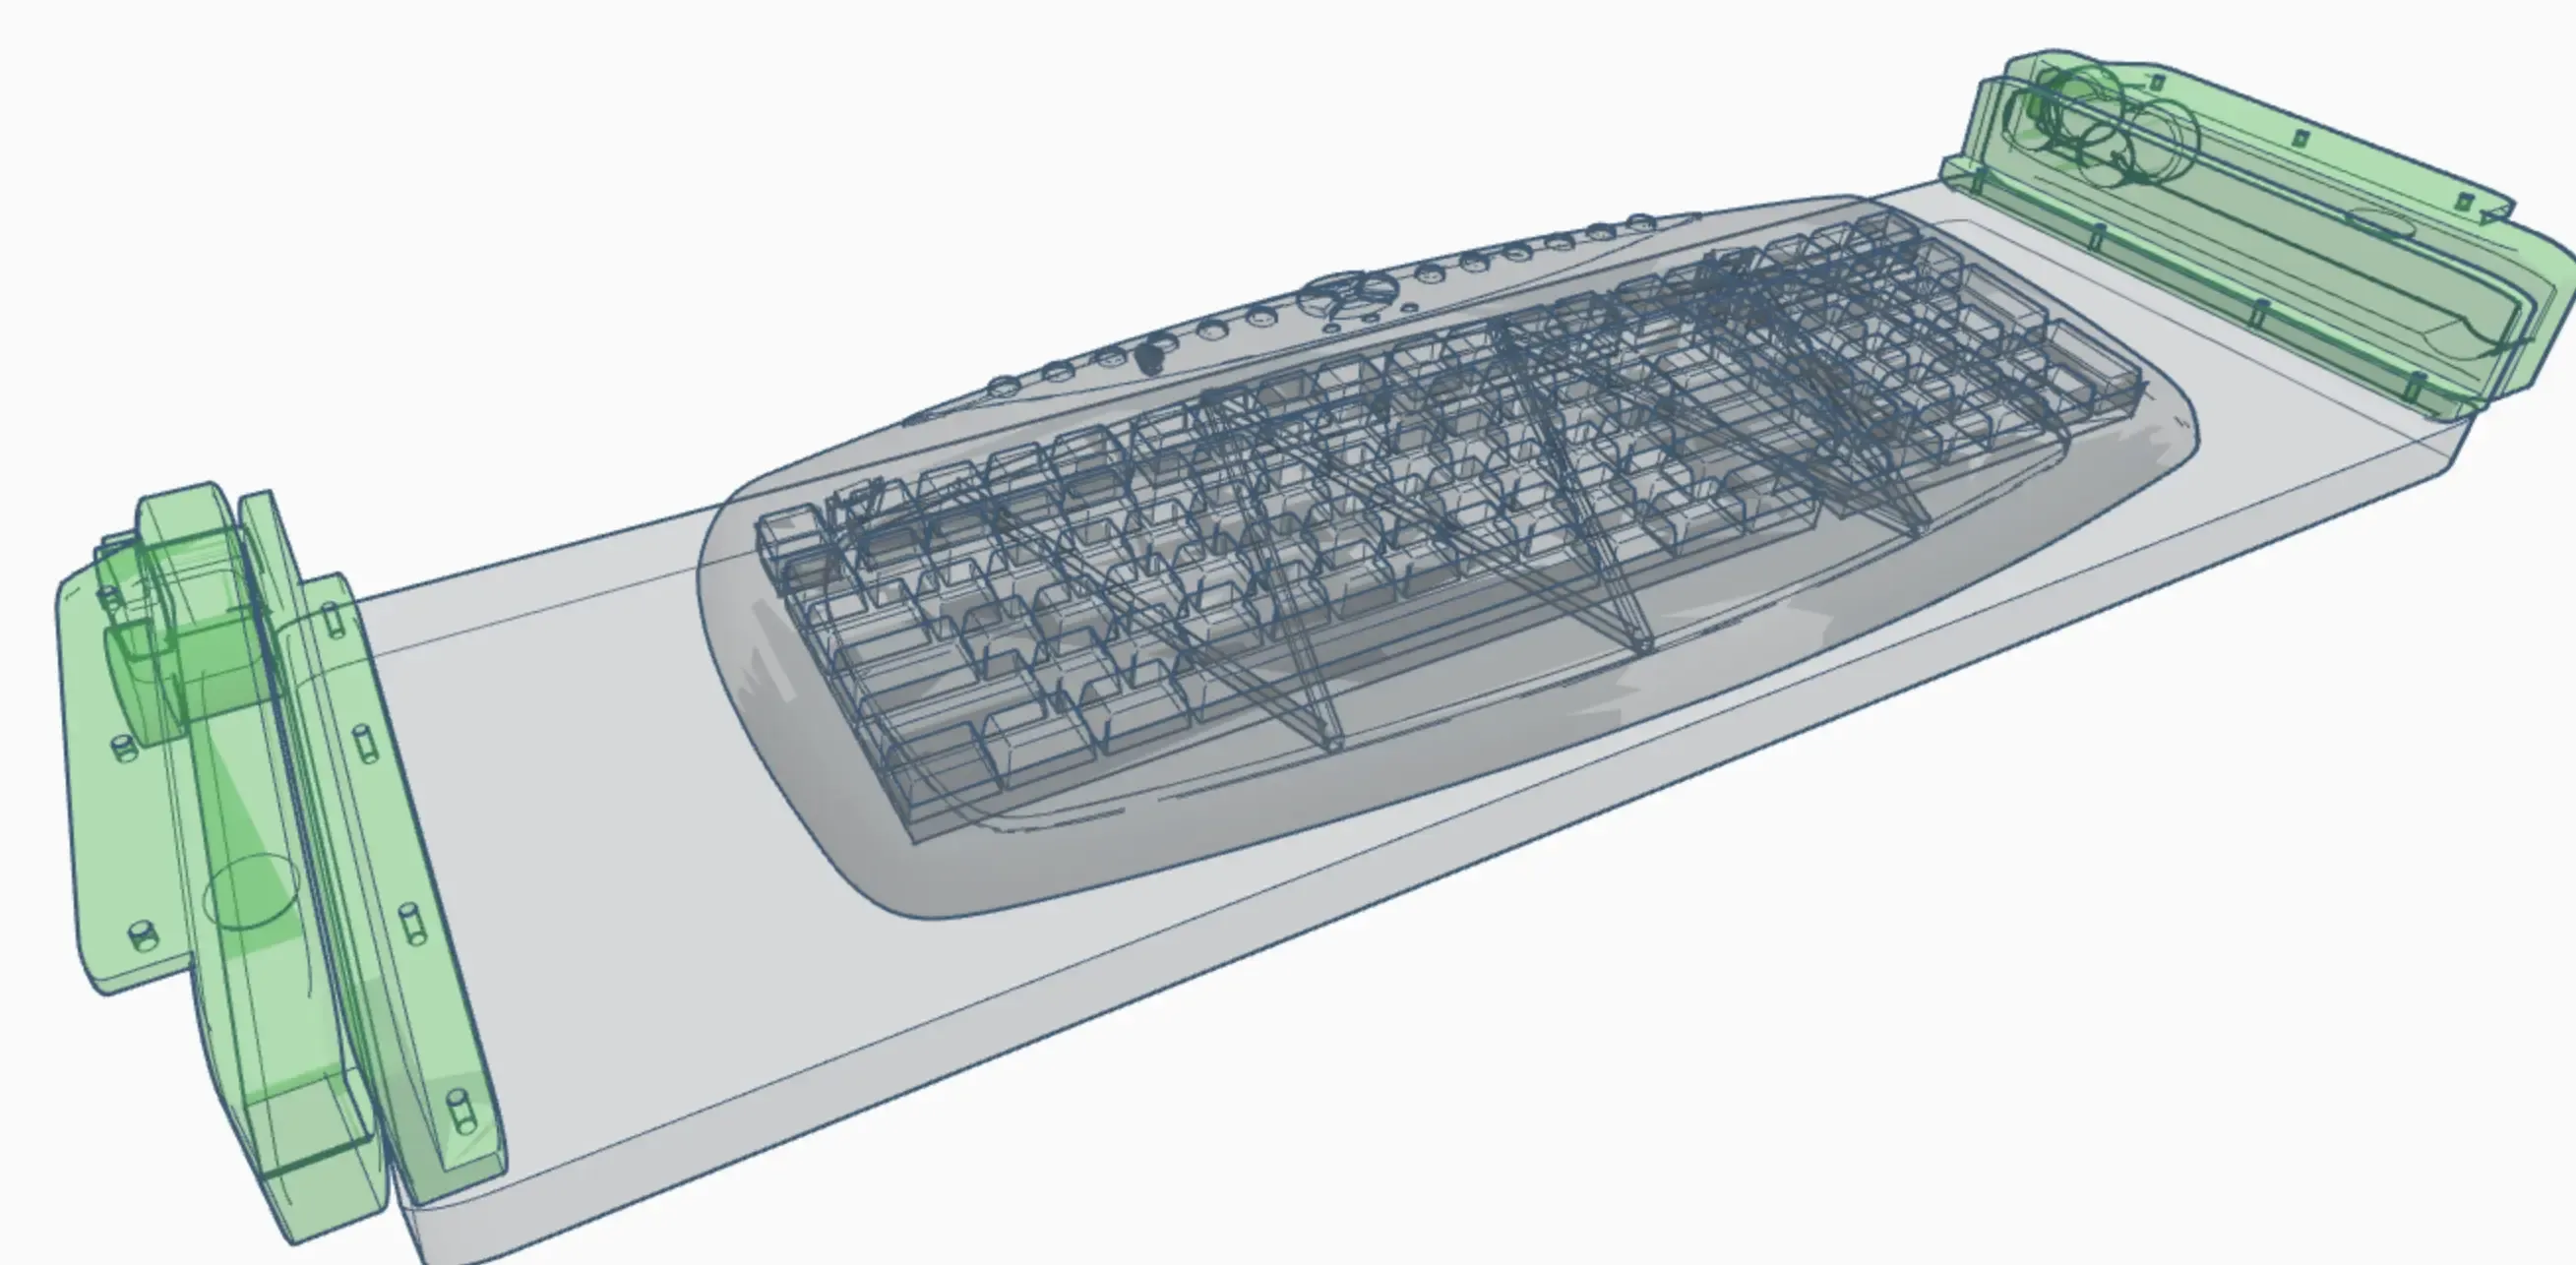 Keyboard Sliders - Sliding Shelf Brackets For PC Desk